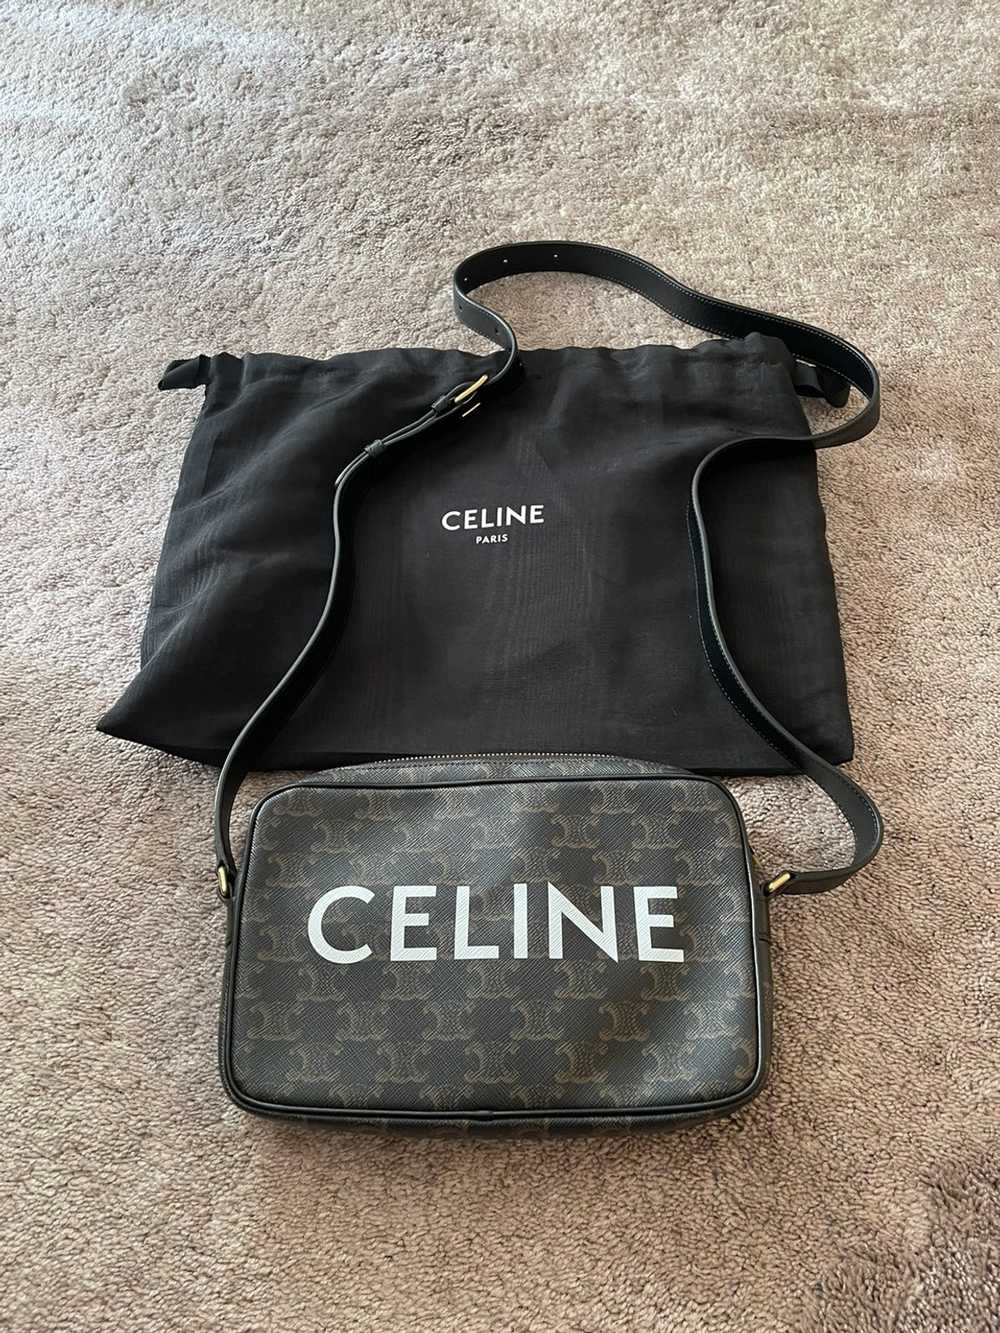 Celine Authentic Celine logo messenger bag - image 1